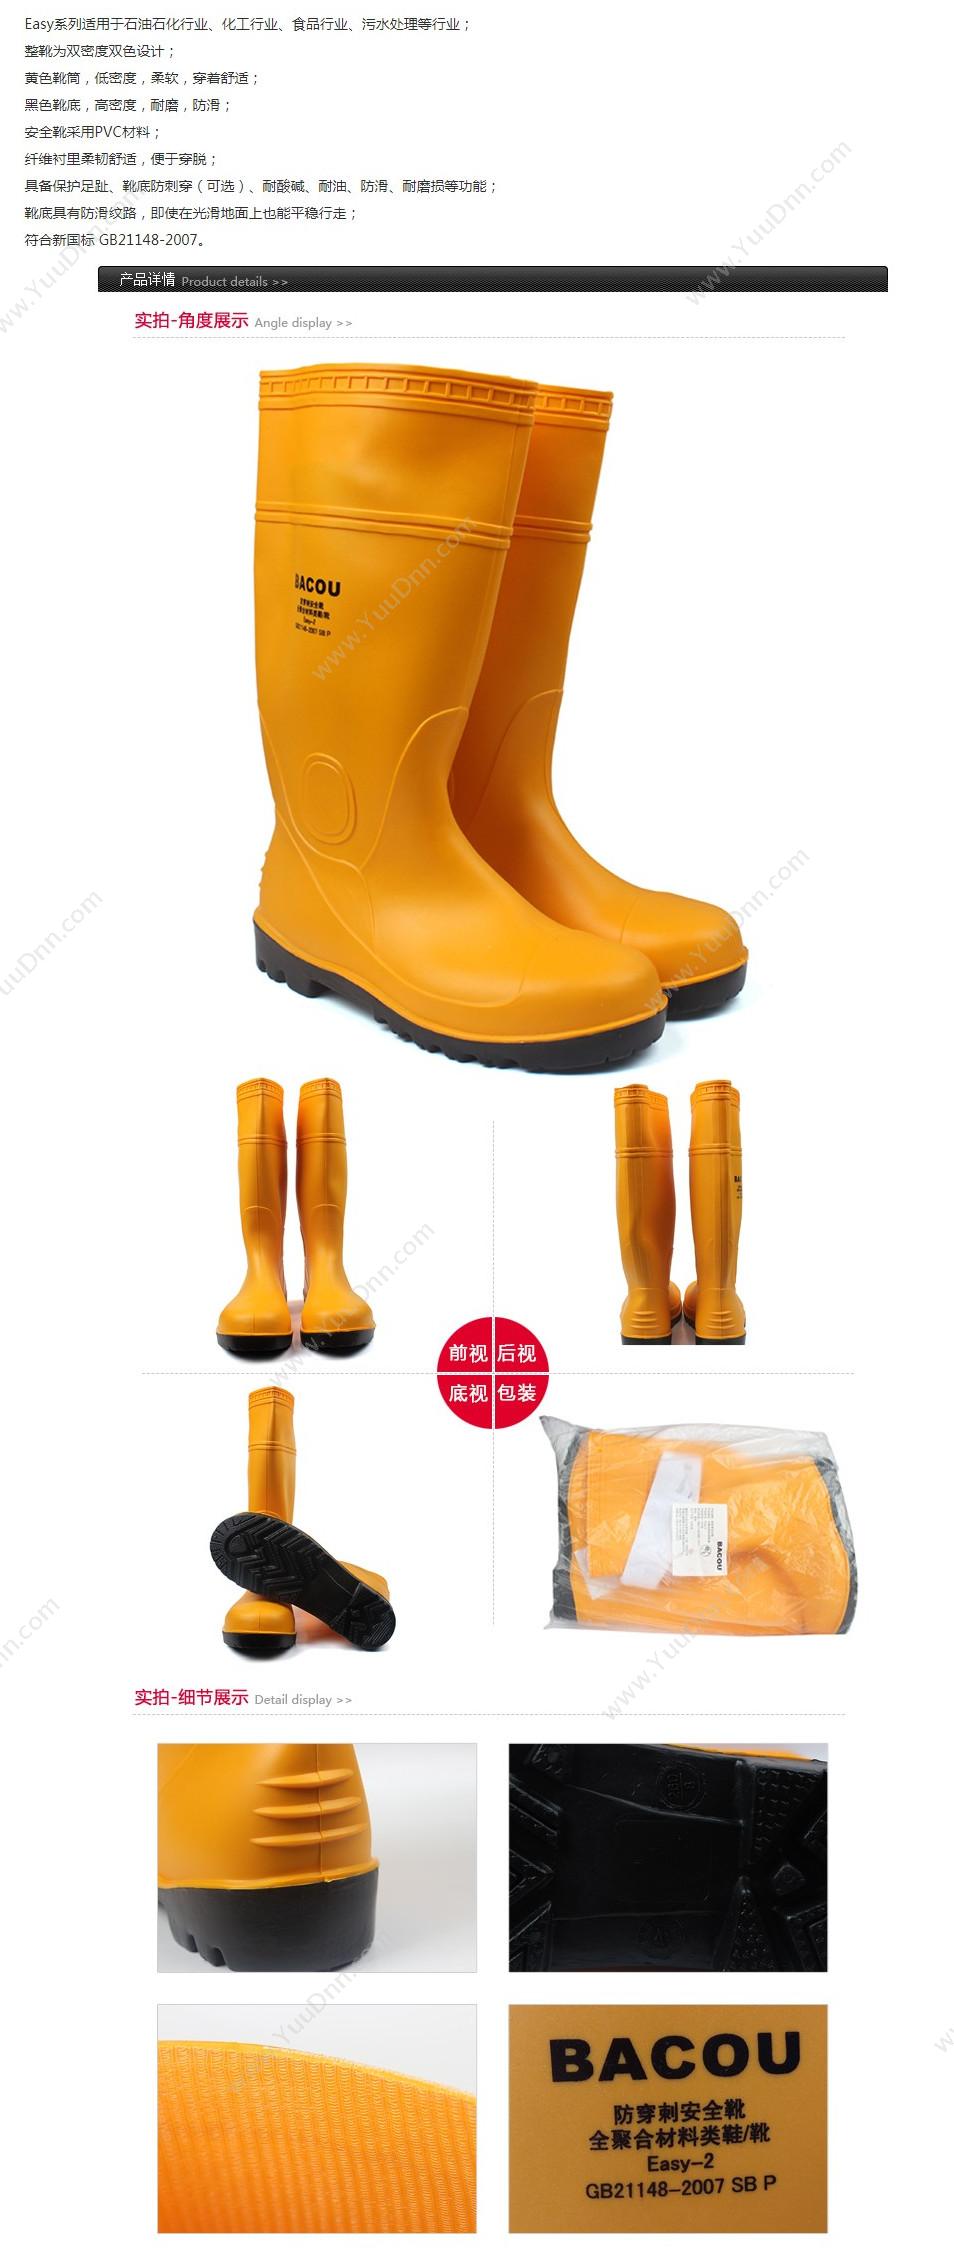 霍尼韦尔 Honeywell 75708 PVC 安全靴Easy 轻型 43 橘黄色 10双/箱 轻便鞋安全靴